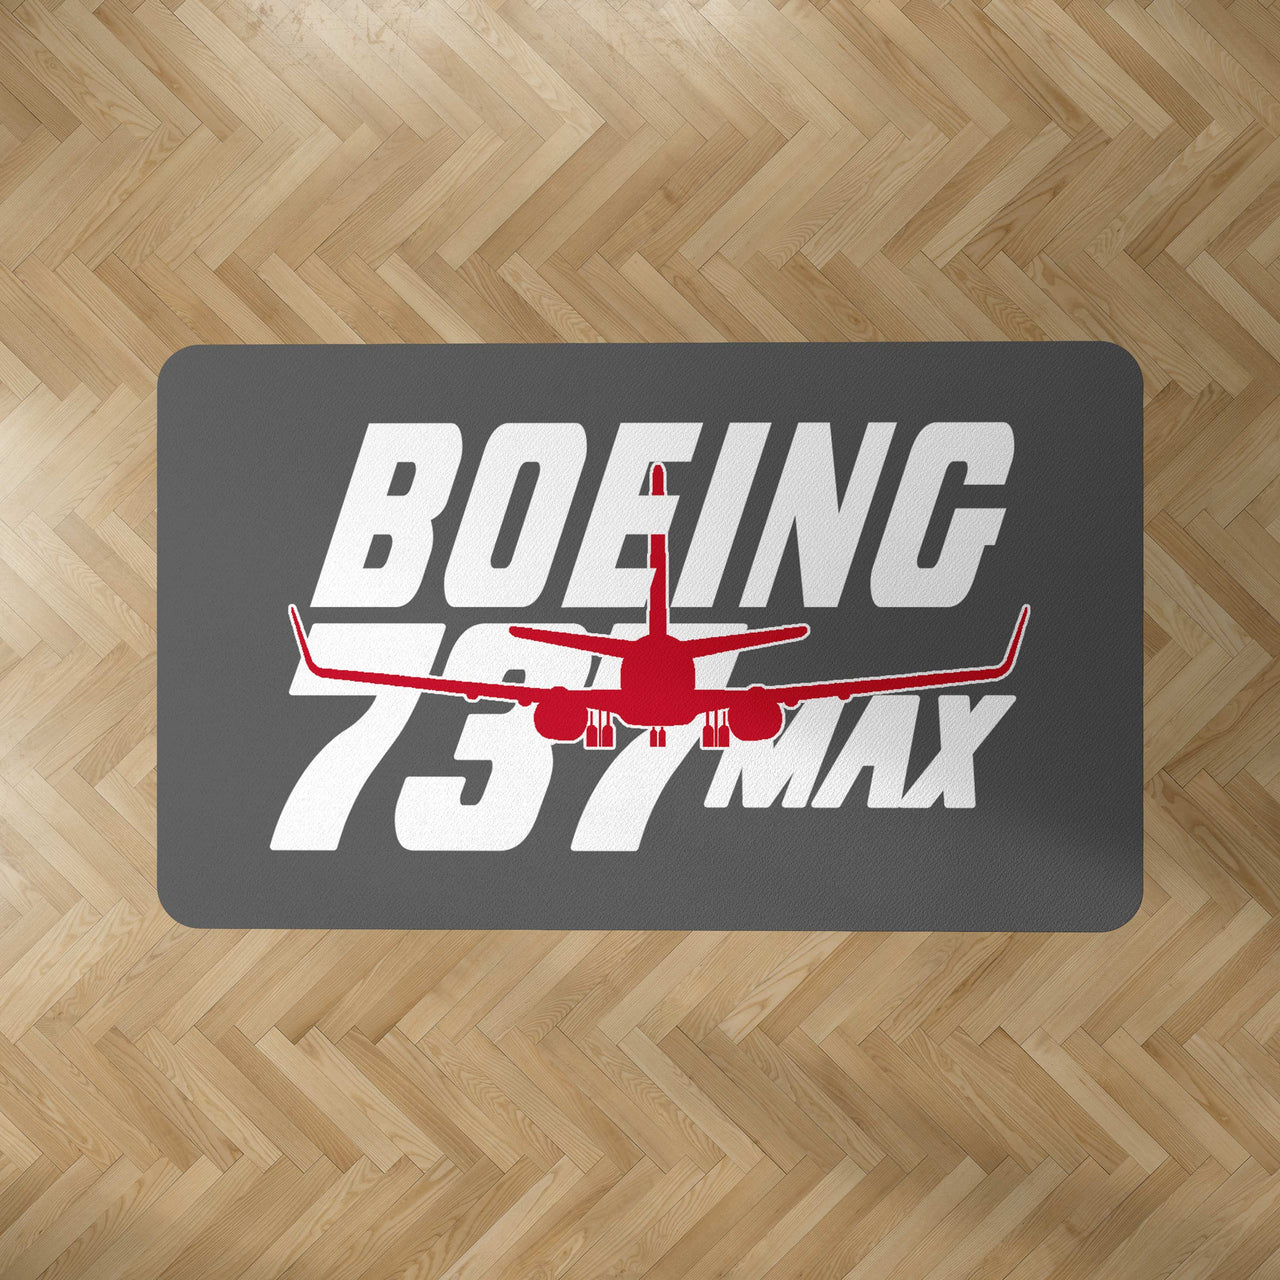 Amazing Boeing 737 Max Designed Carpet & Floor Mats